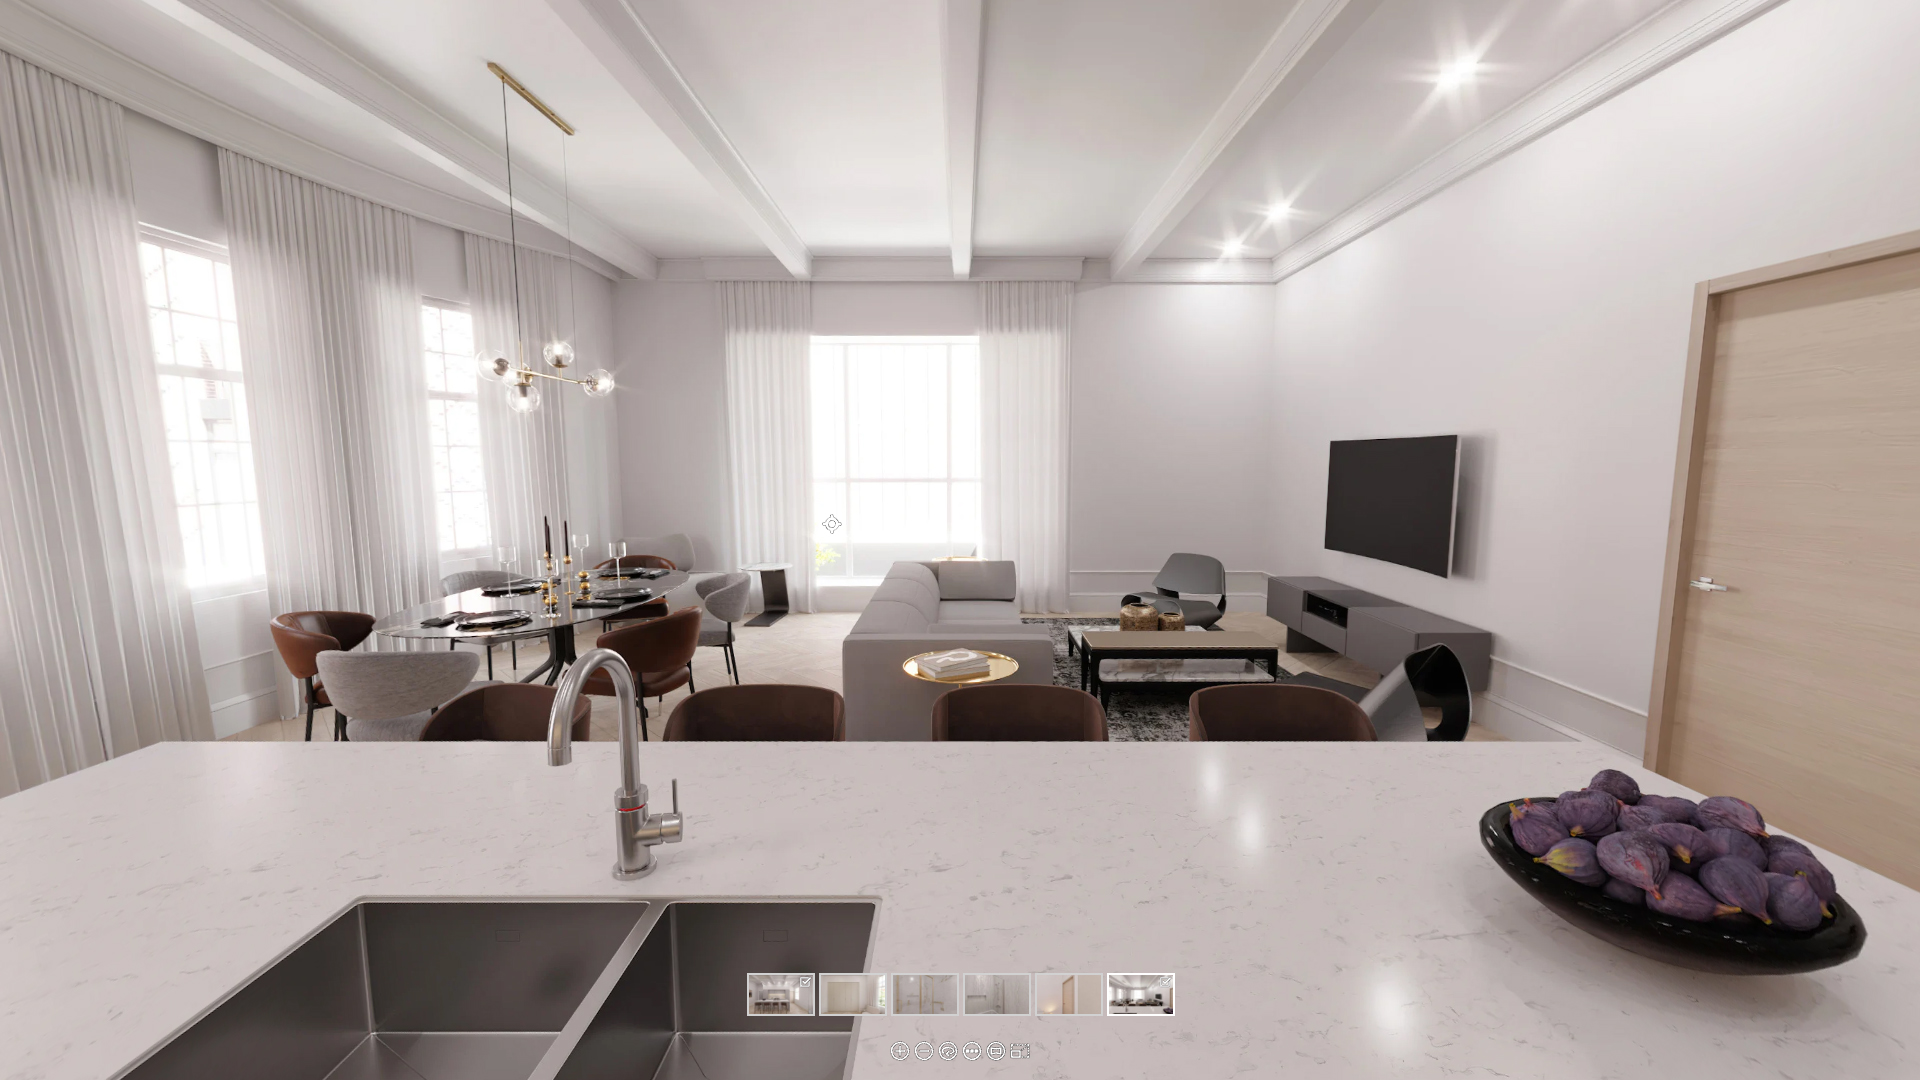 3D Real Estate Virtual Tour for a Luxurious Condo